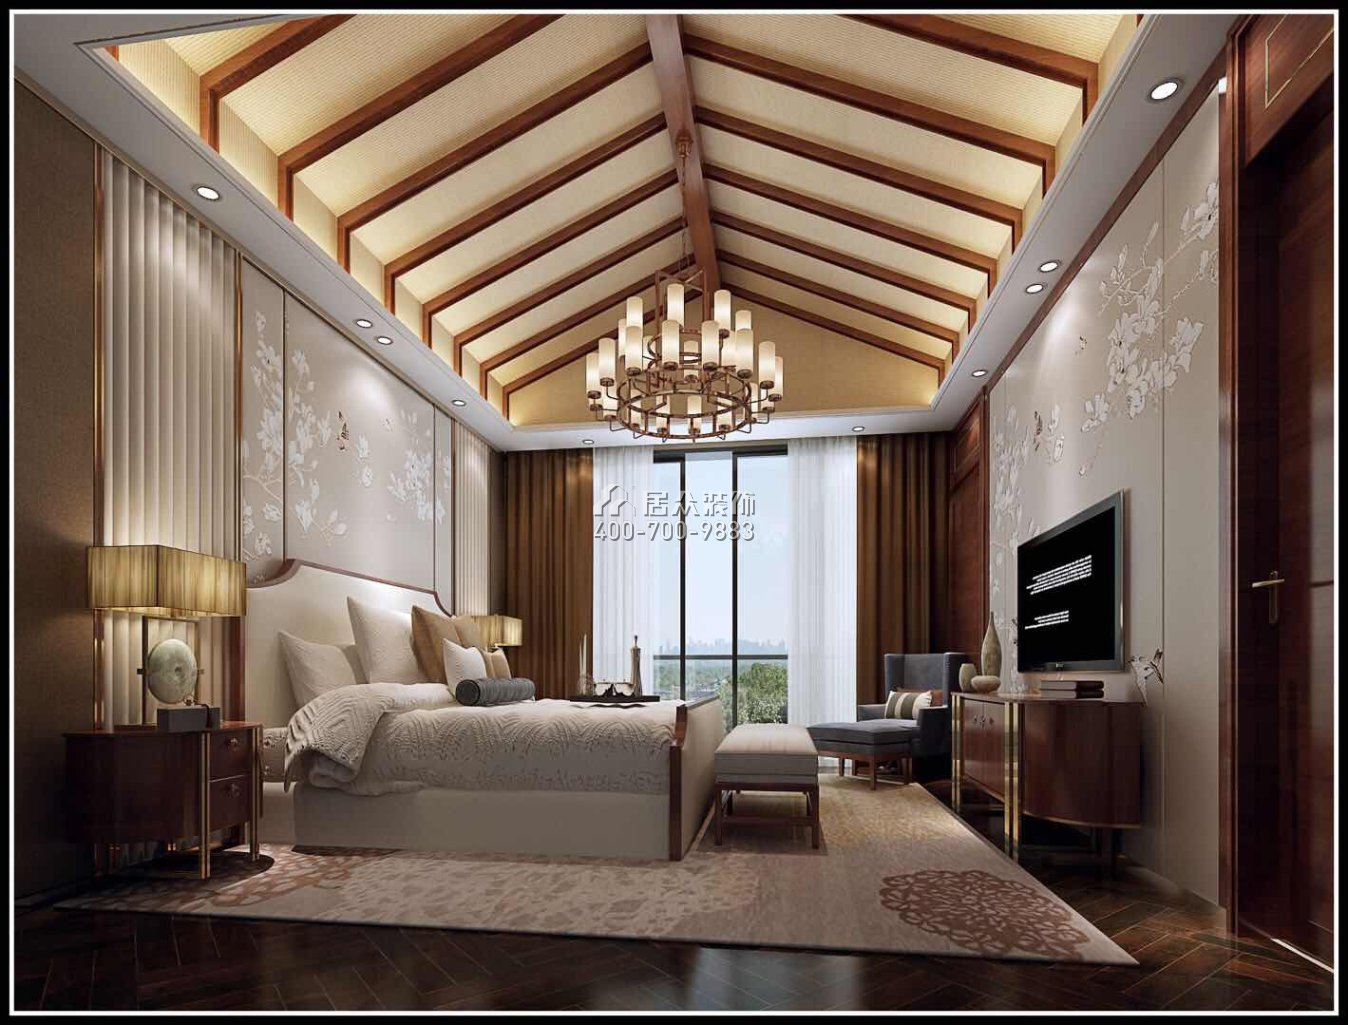 新世纪上河居330平方米中式风格复式户型卧室装修效果图